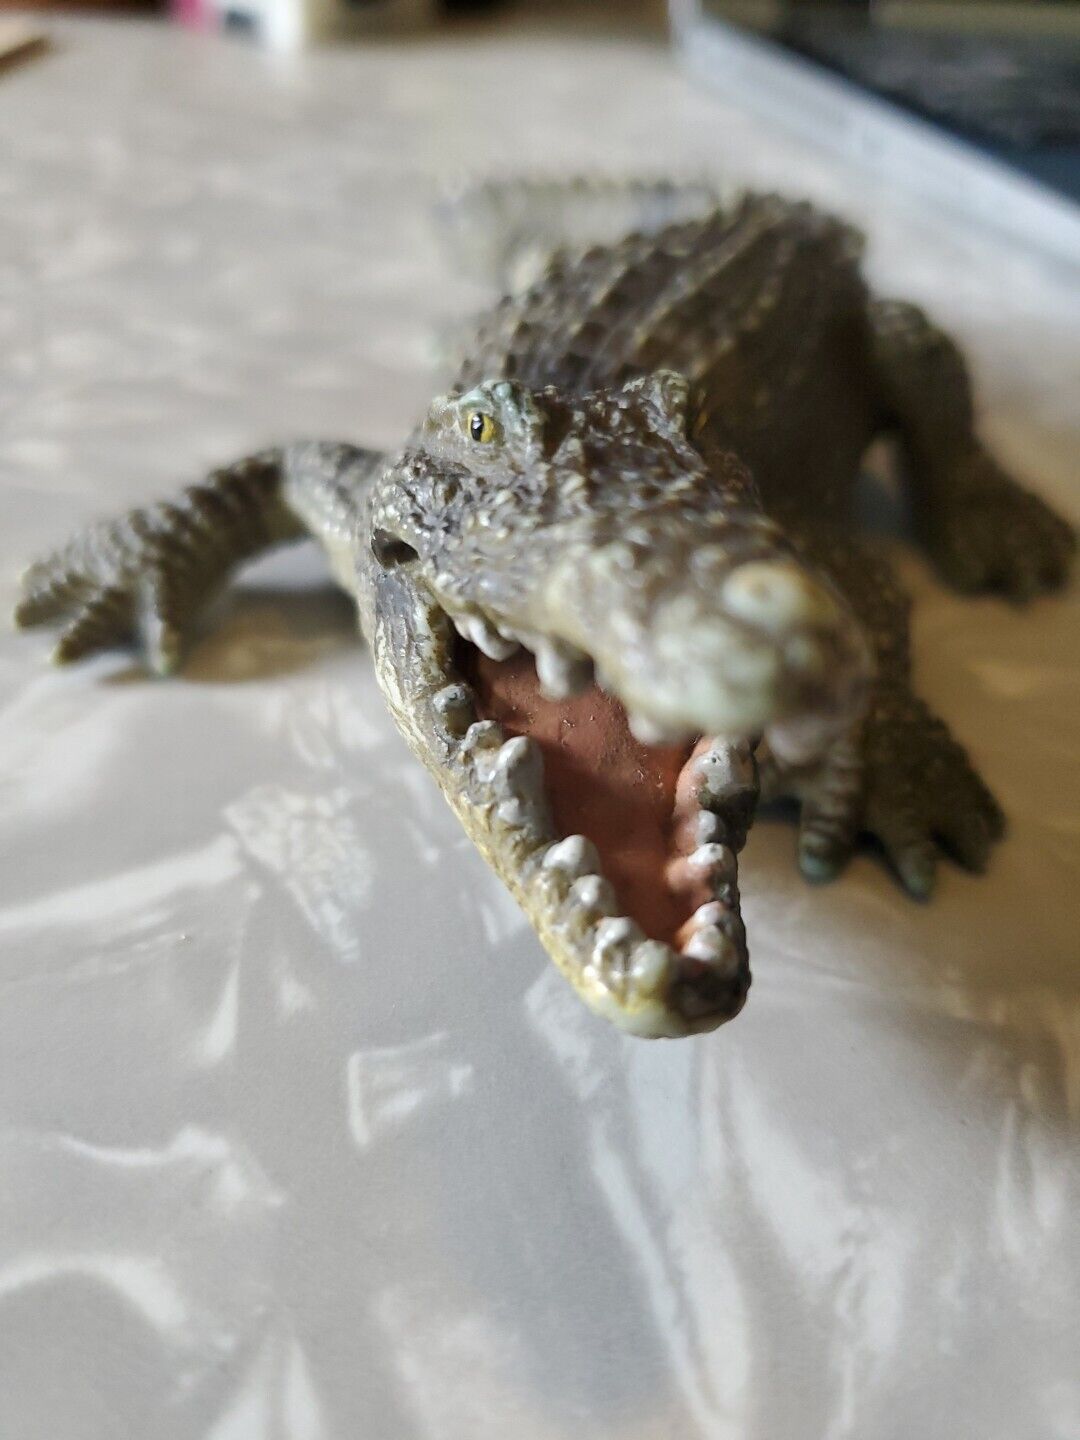 Schleich CROCODILE 2007 Animal Figure Retired 7” Alligator Reptile Croc